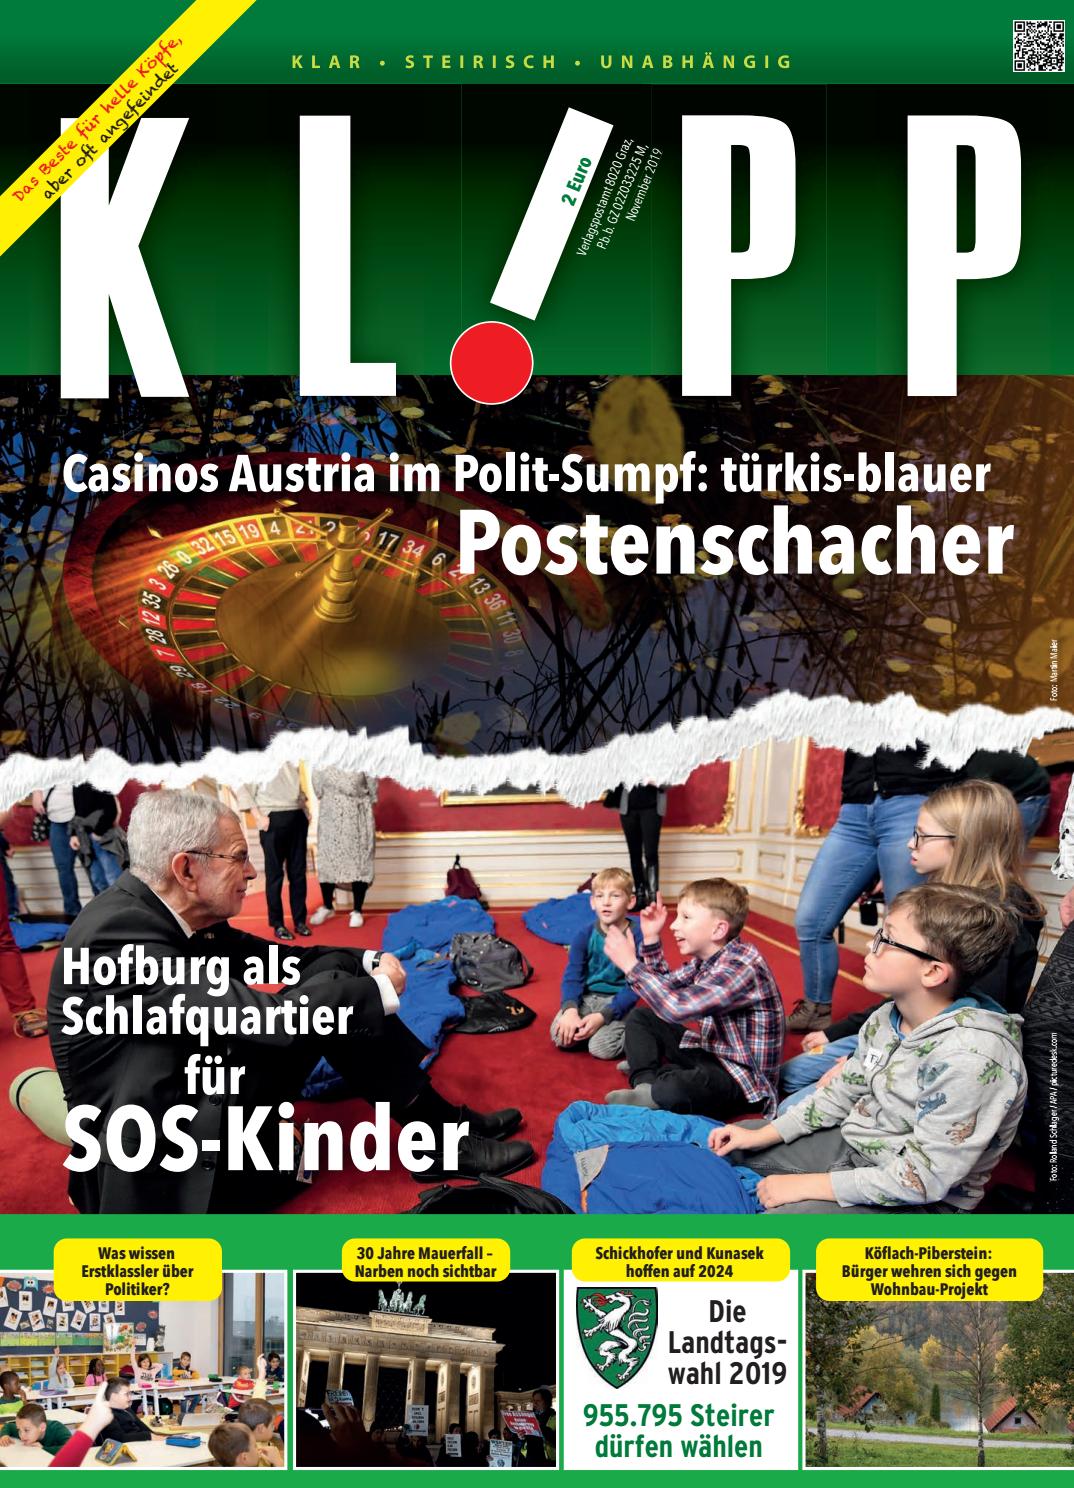 Nestroy Garten Inspirierend Klipp November 2019 by Klipp Zeitschriften issuu